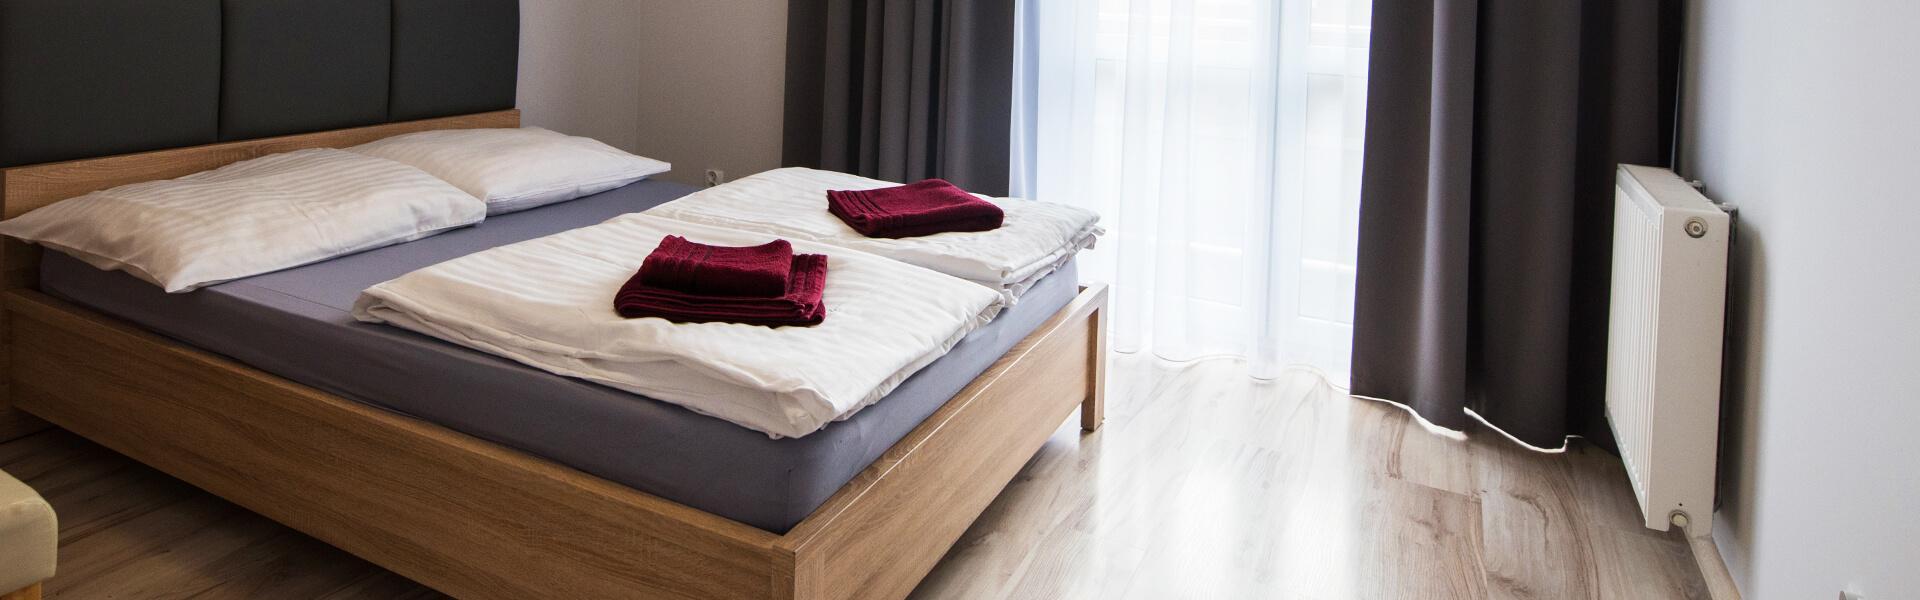 Slajd #2 Pokój hotelowy, łóżko z kołdrą, poduszkami, ręczniki